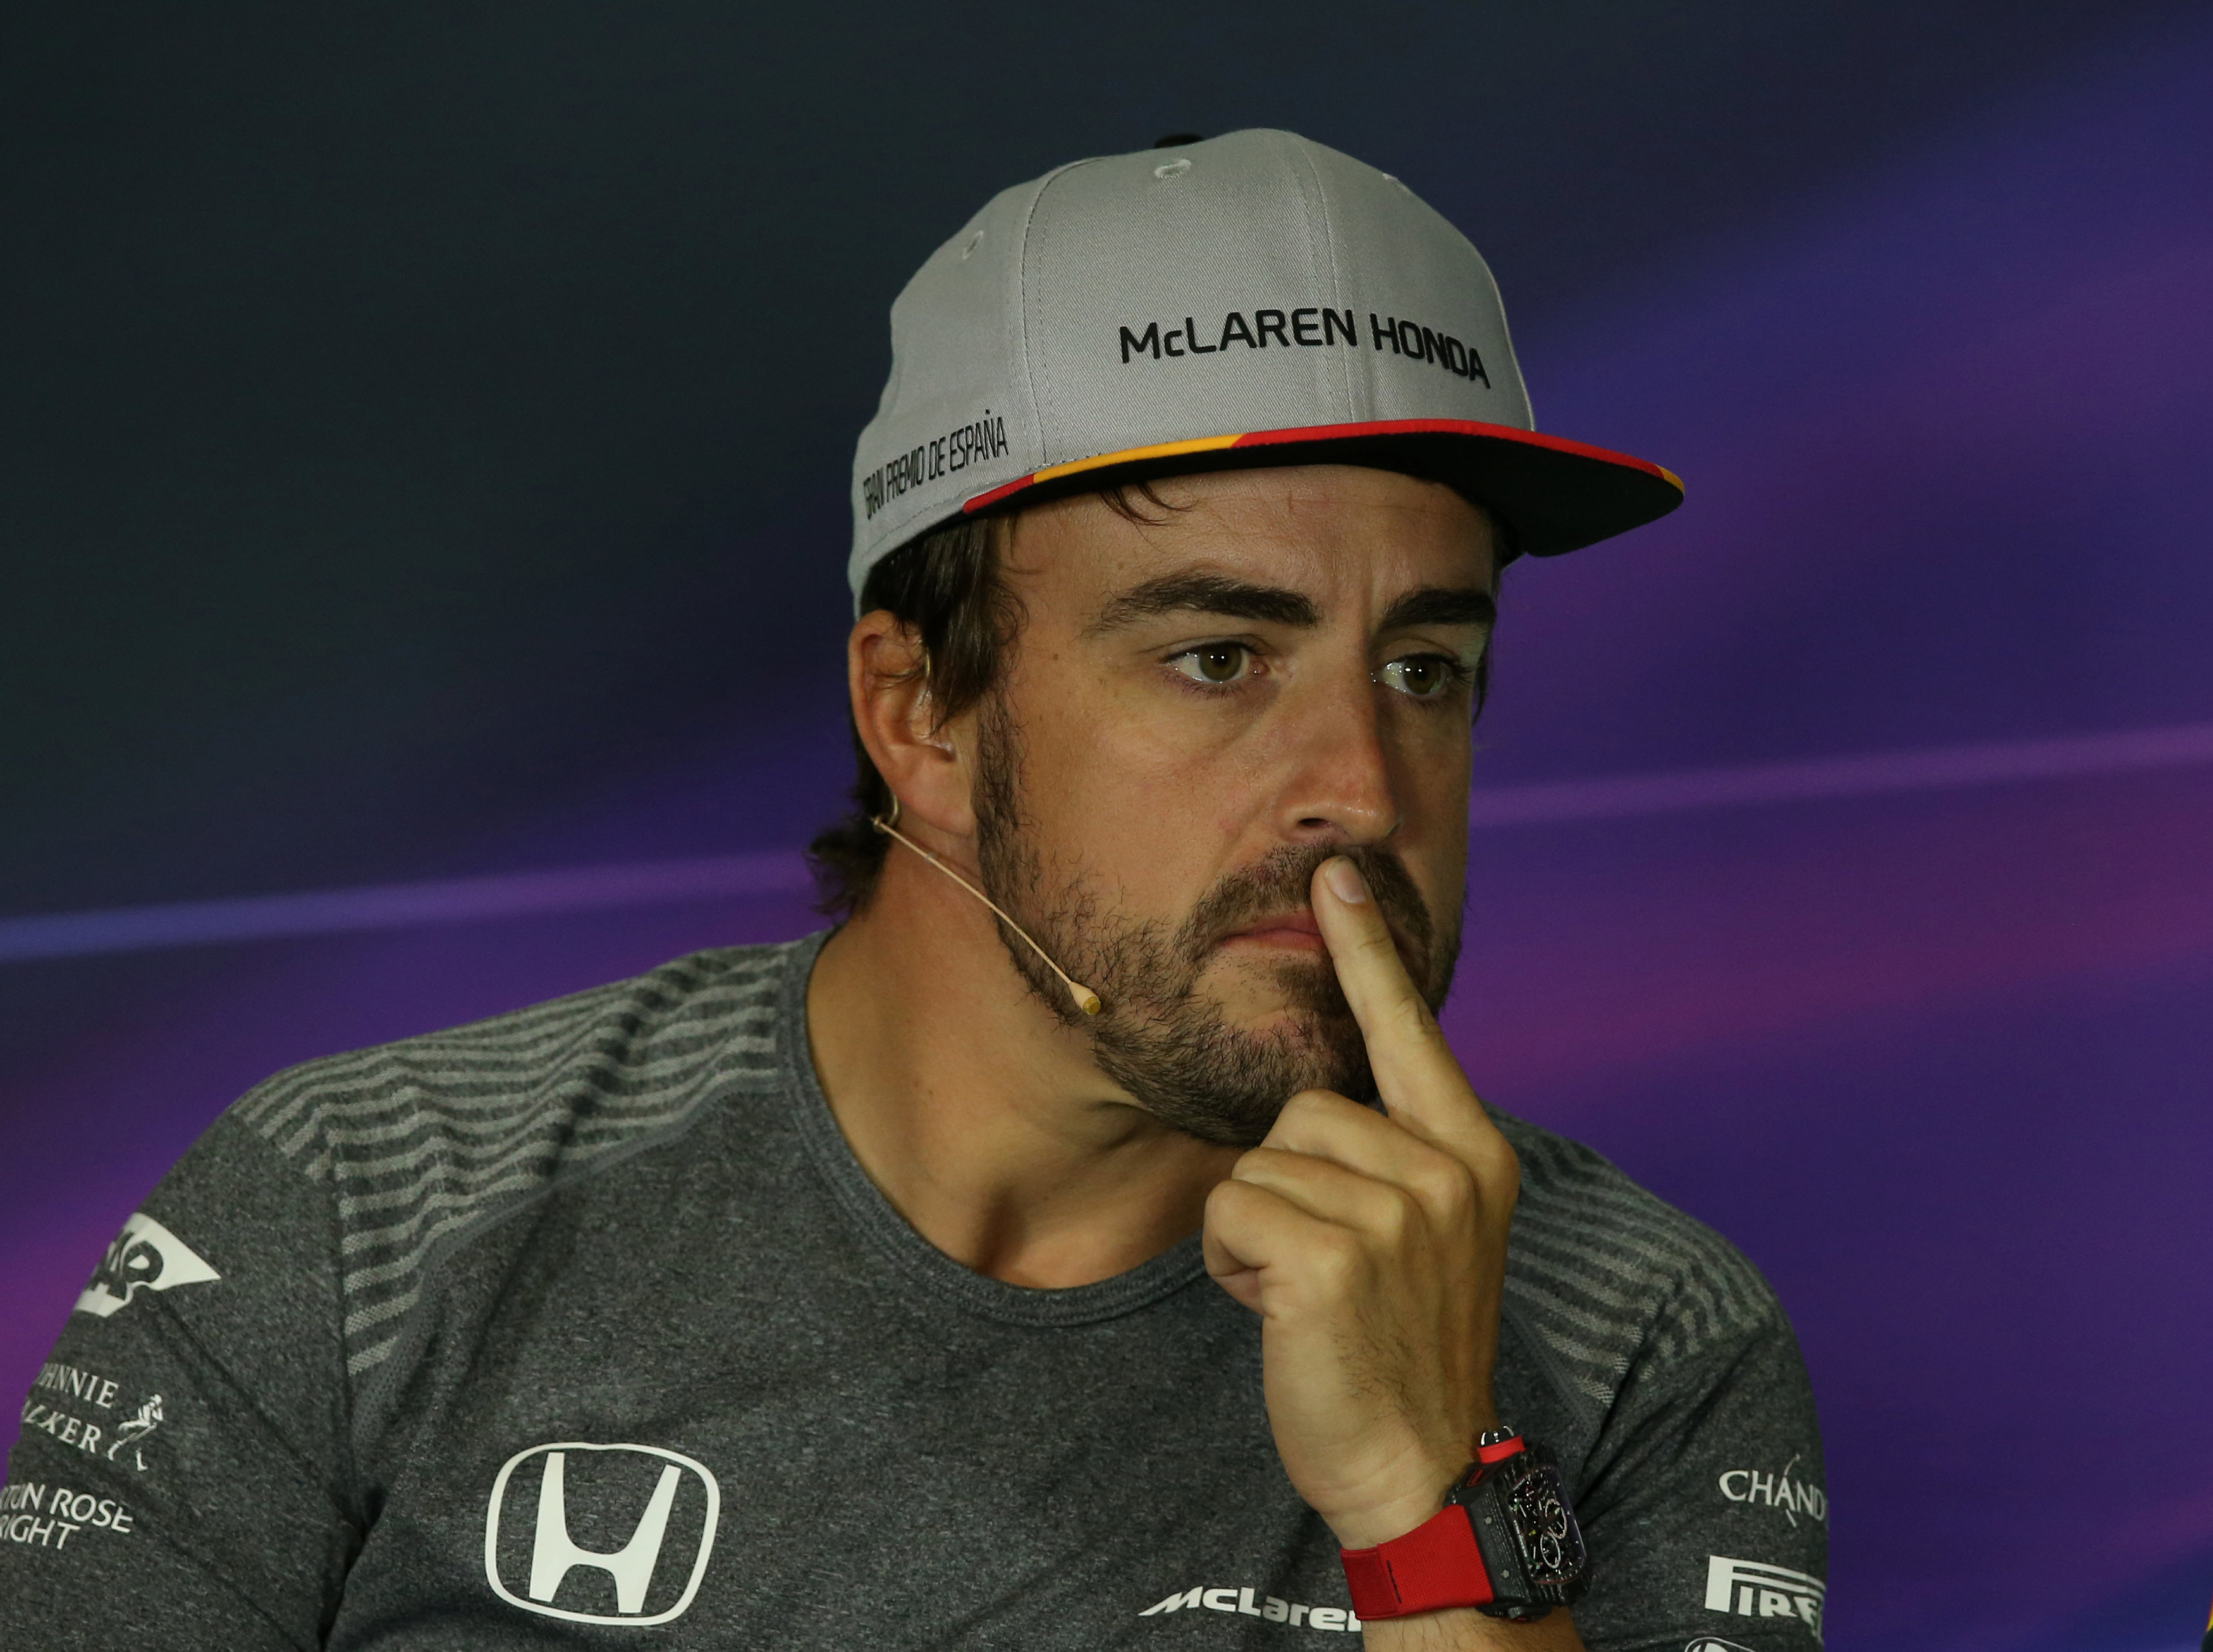 Fernando Alonso: Quiero estar con McLaren, pero quiero ganar